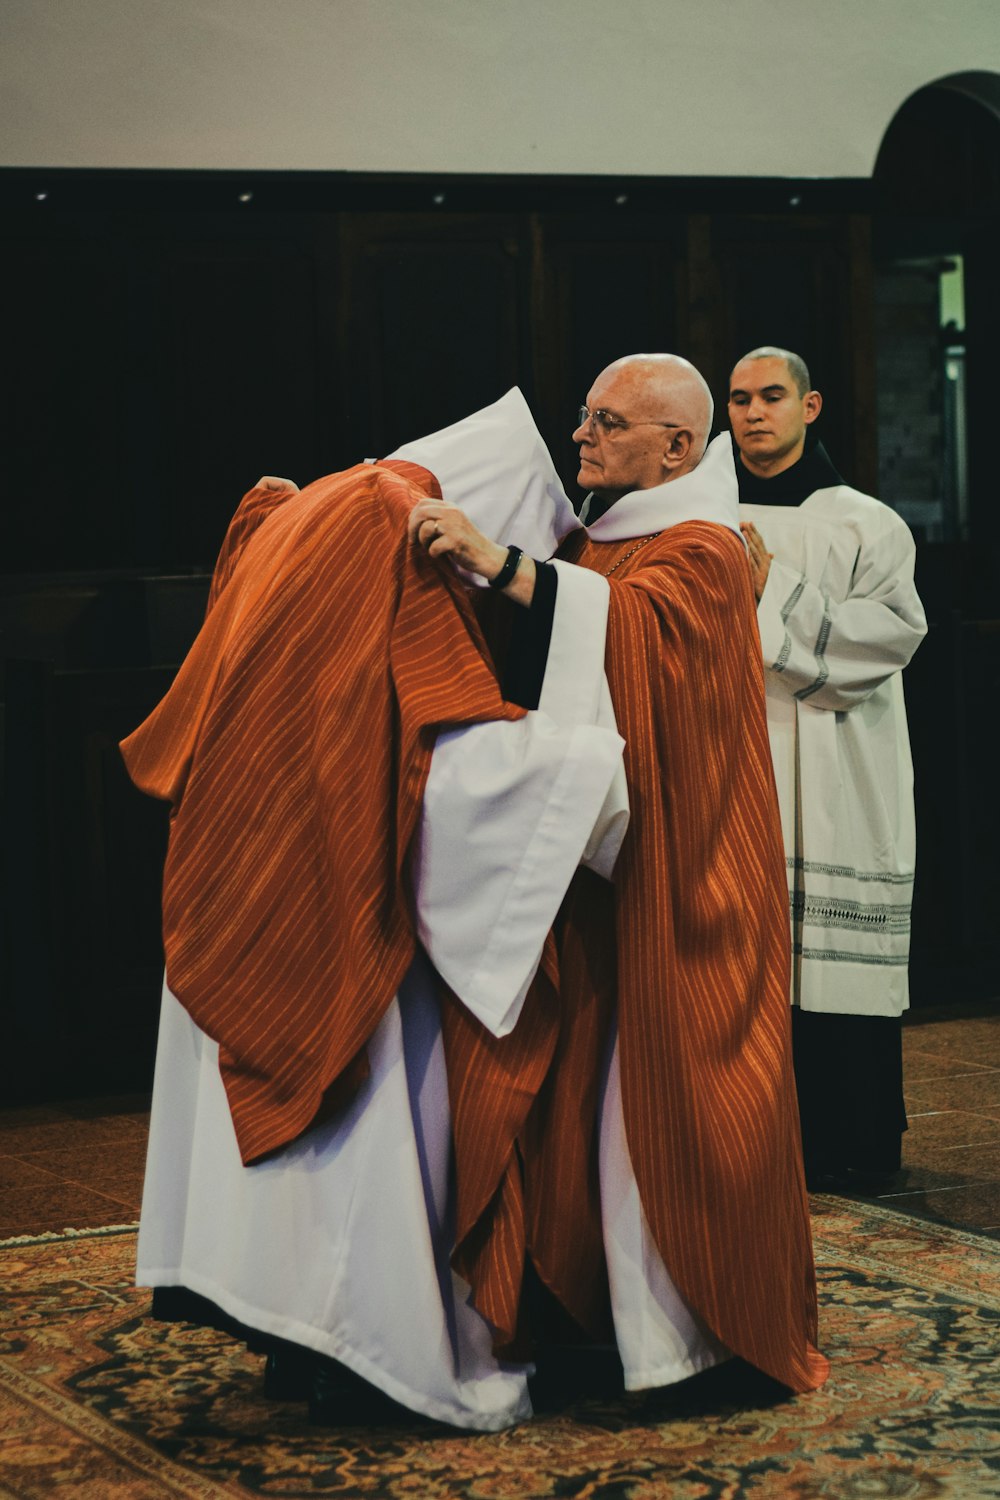 Dos sacerdotes con túnicas marrones y blancas